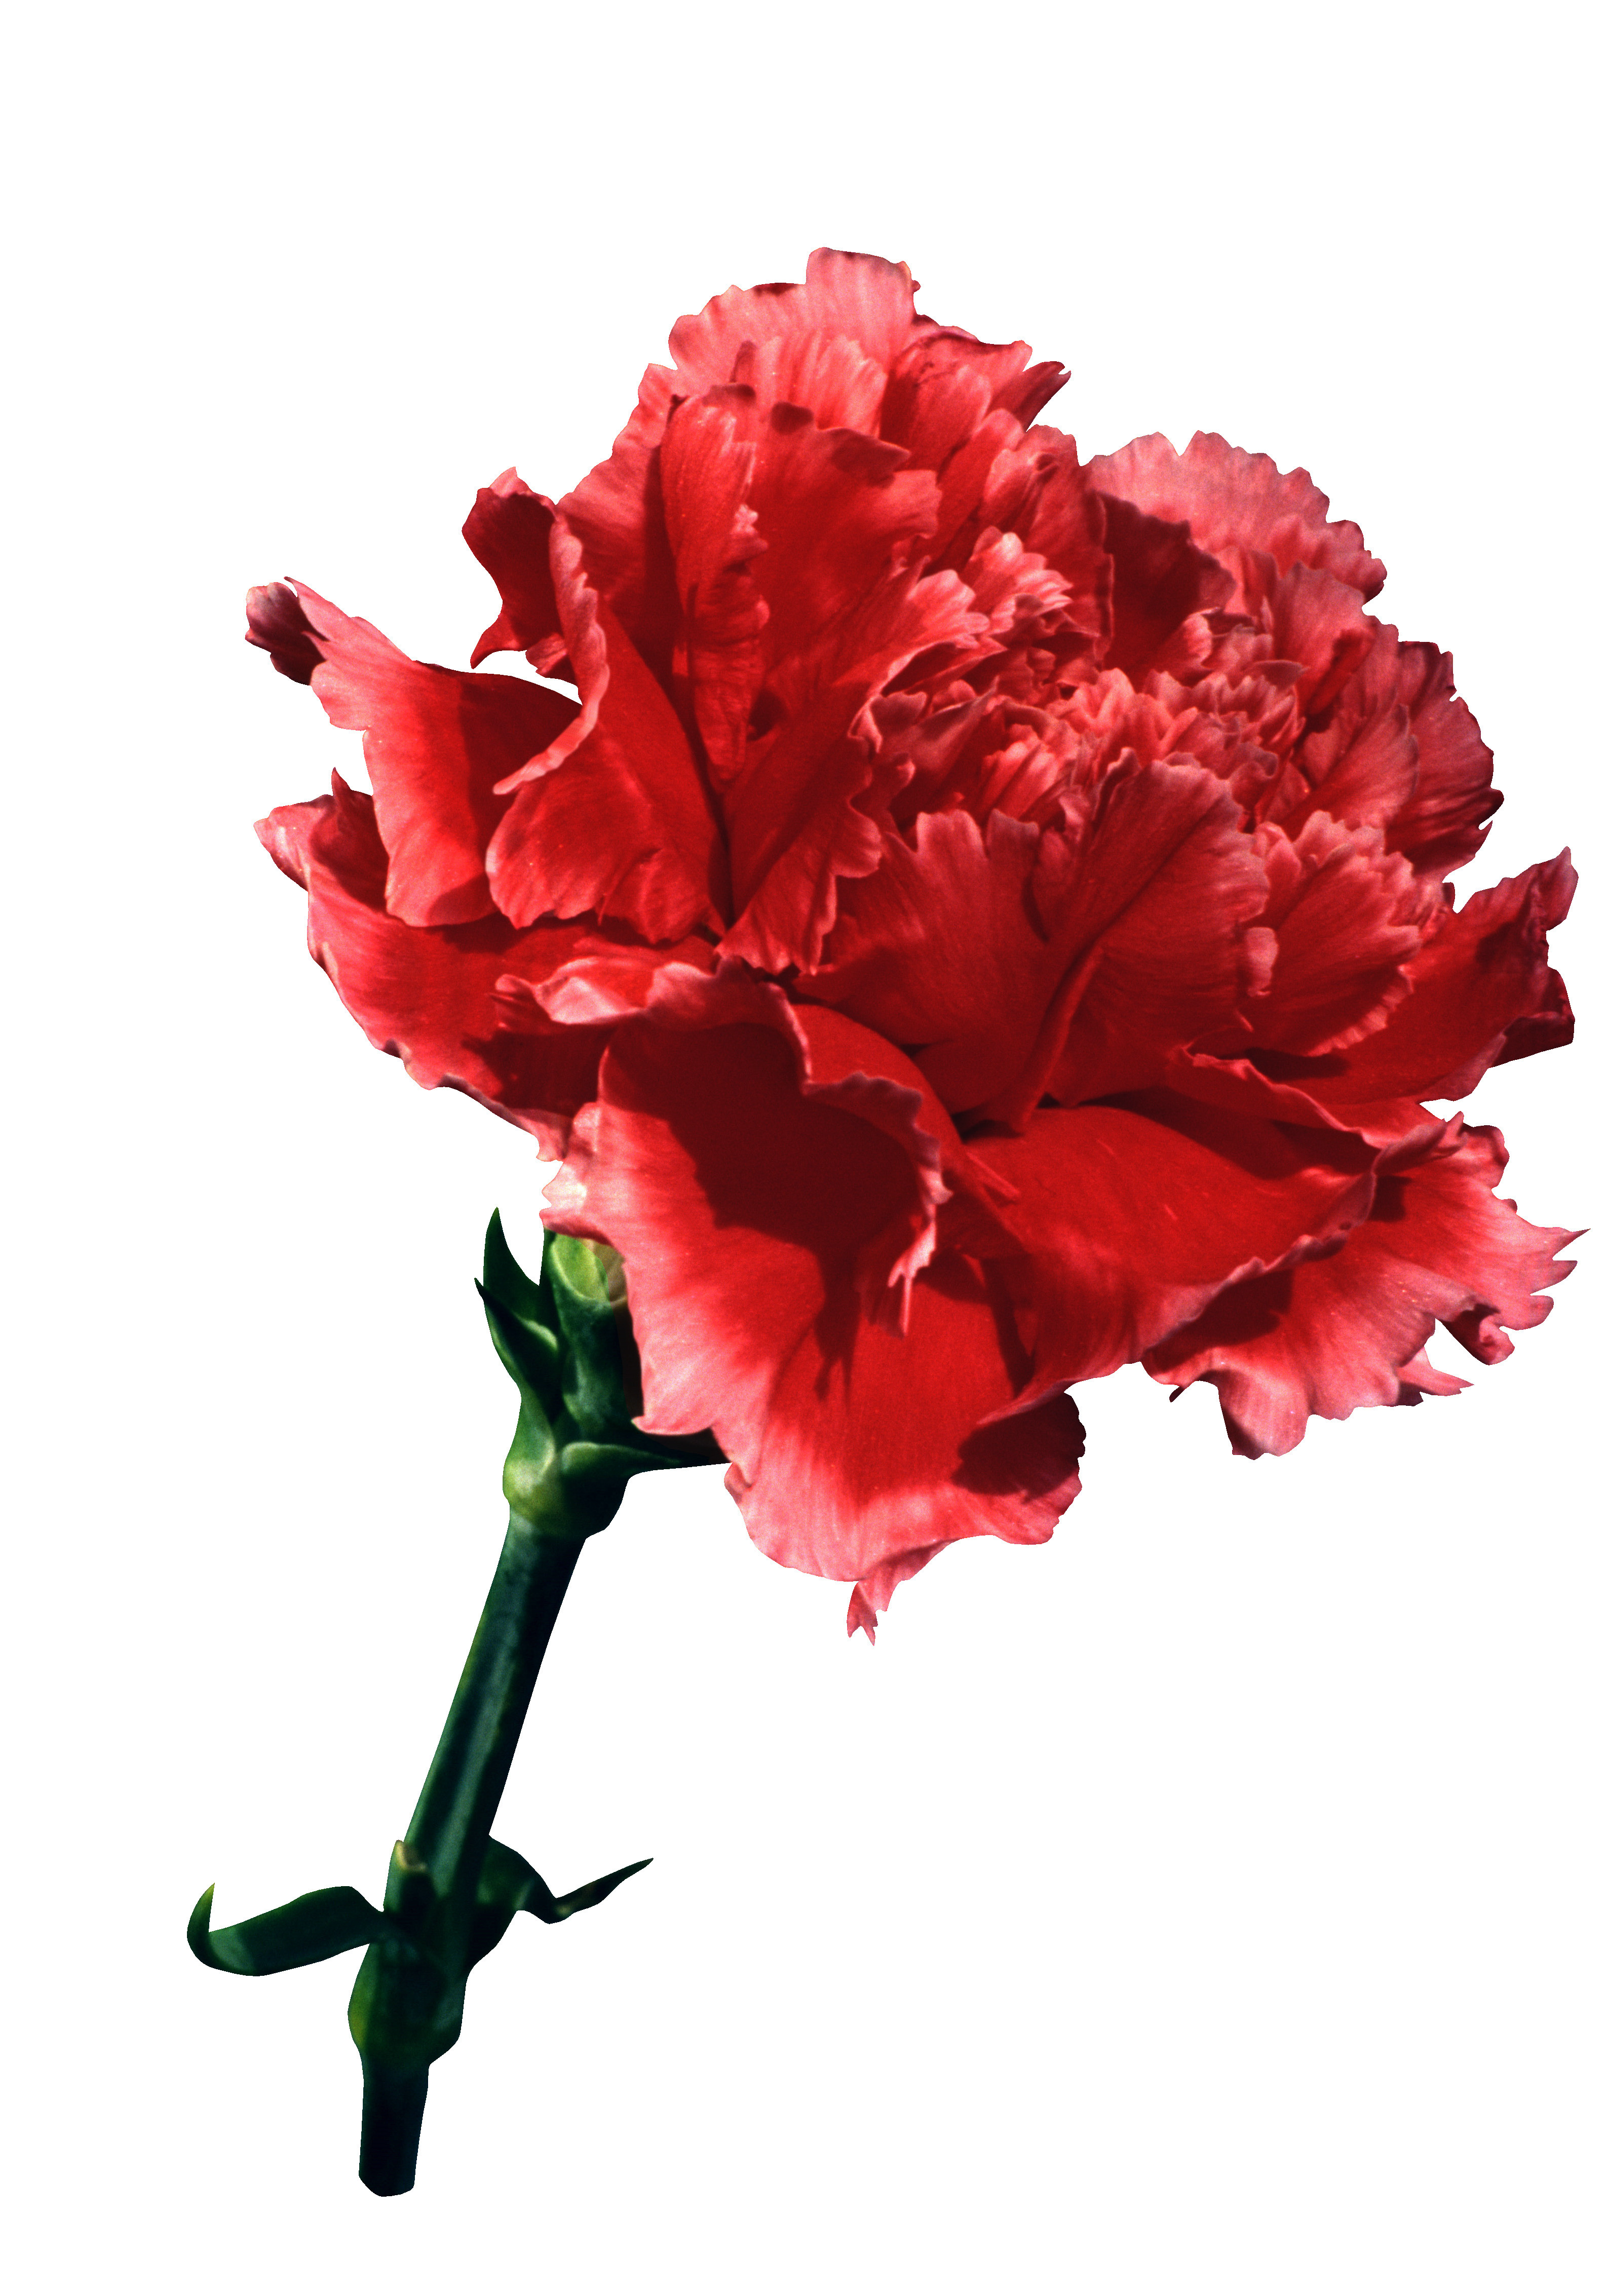 Картинки цветов гвоздик. Dianthus Red гвоздика. Гвоздика pngи Мак. Carnation Flower букет. Красный гвоздь.